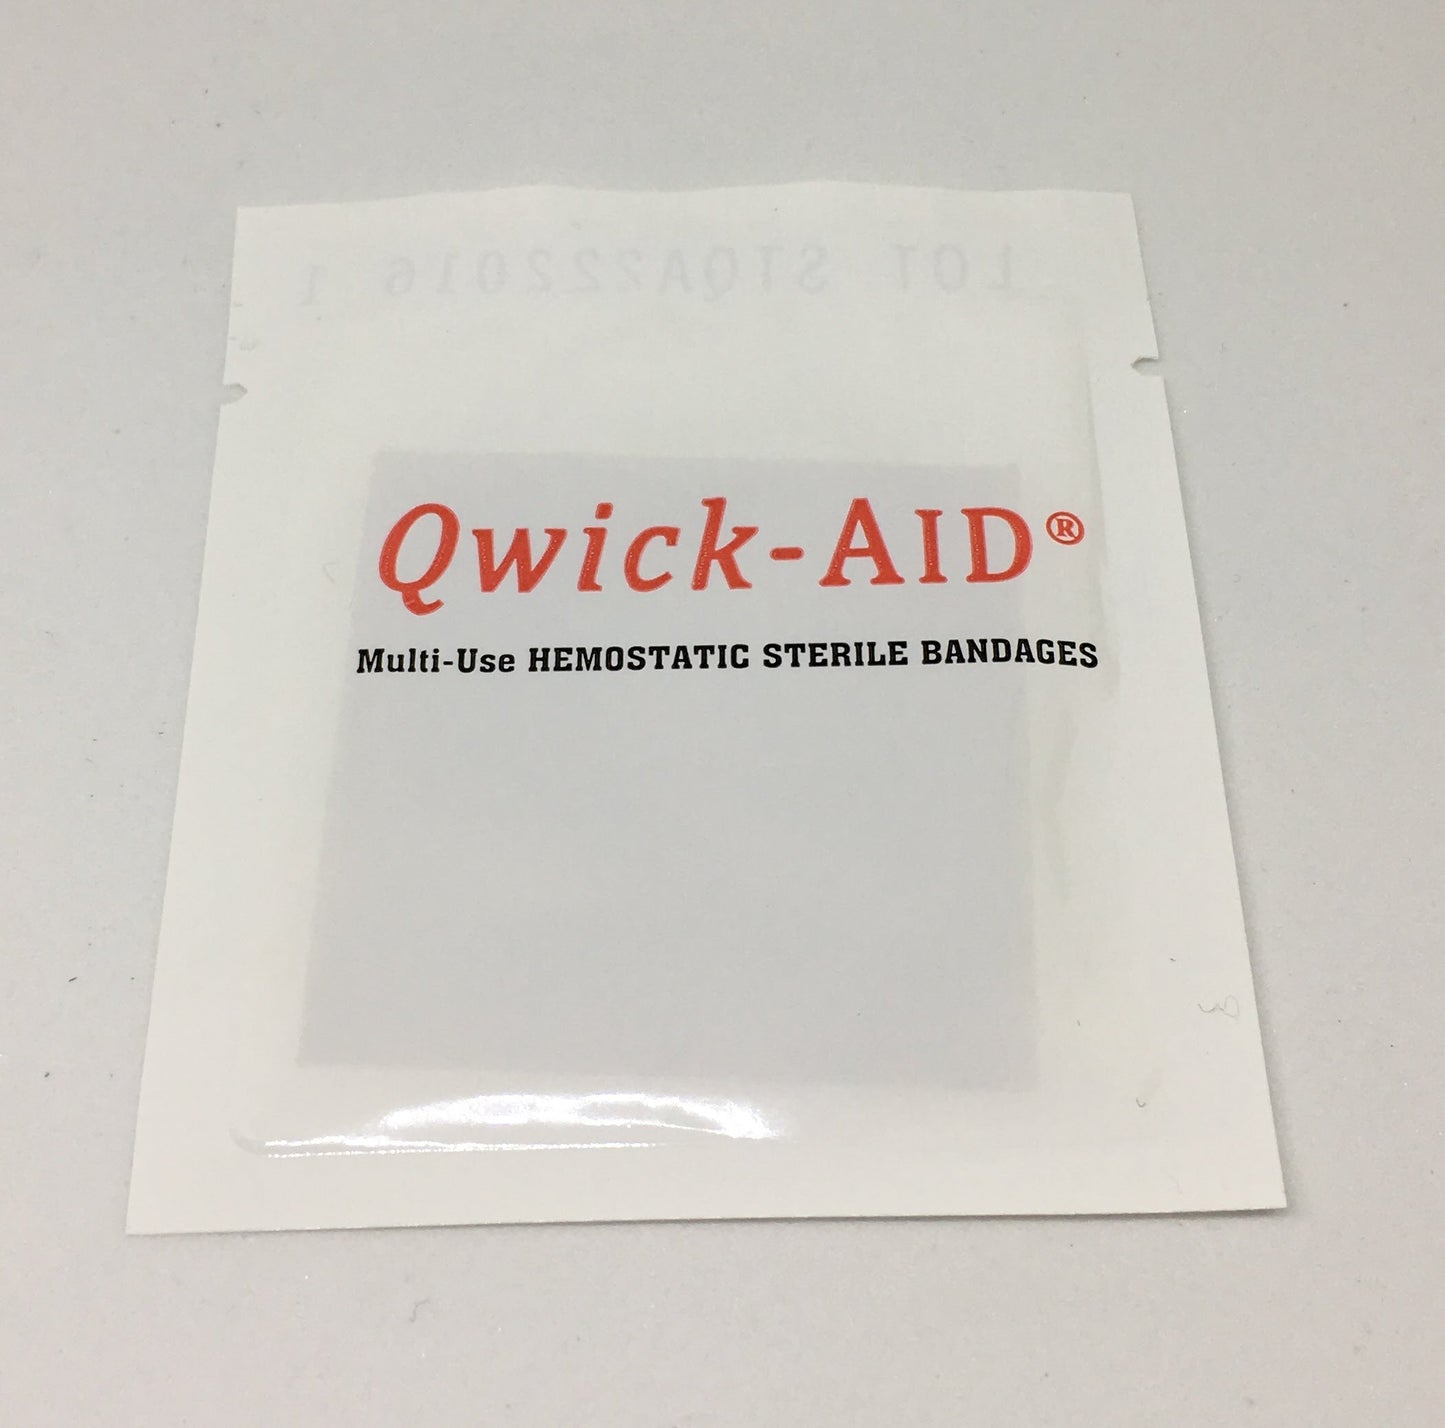 QWICK-AID (detiene el sangrado en segundos)